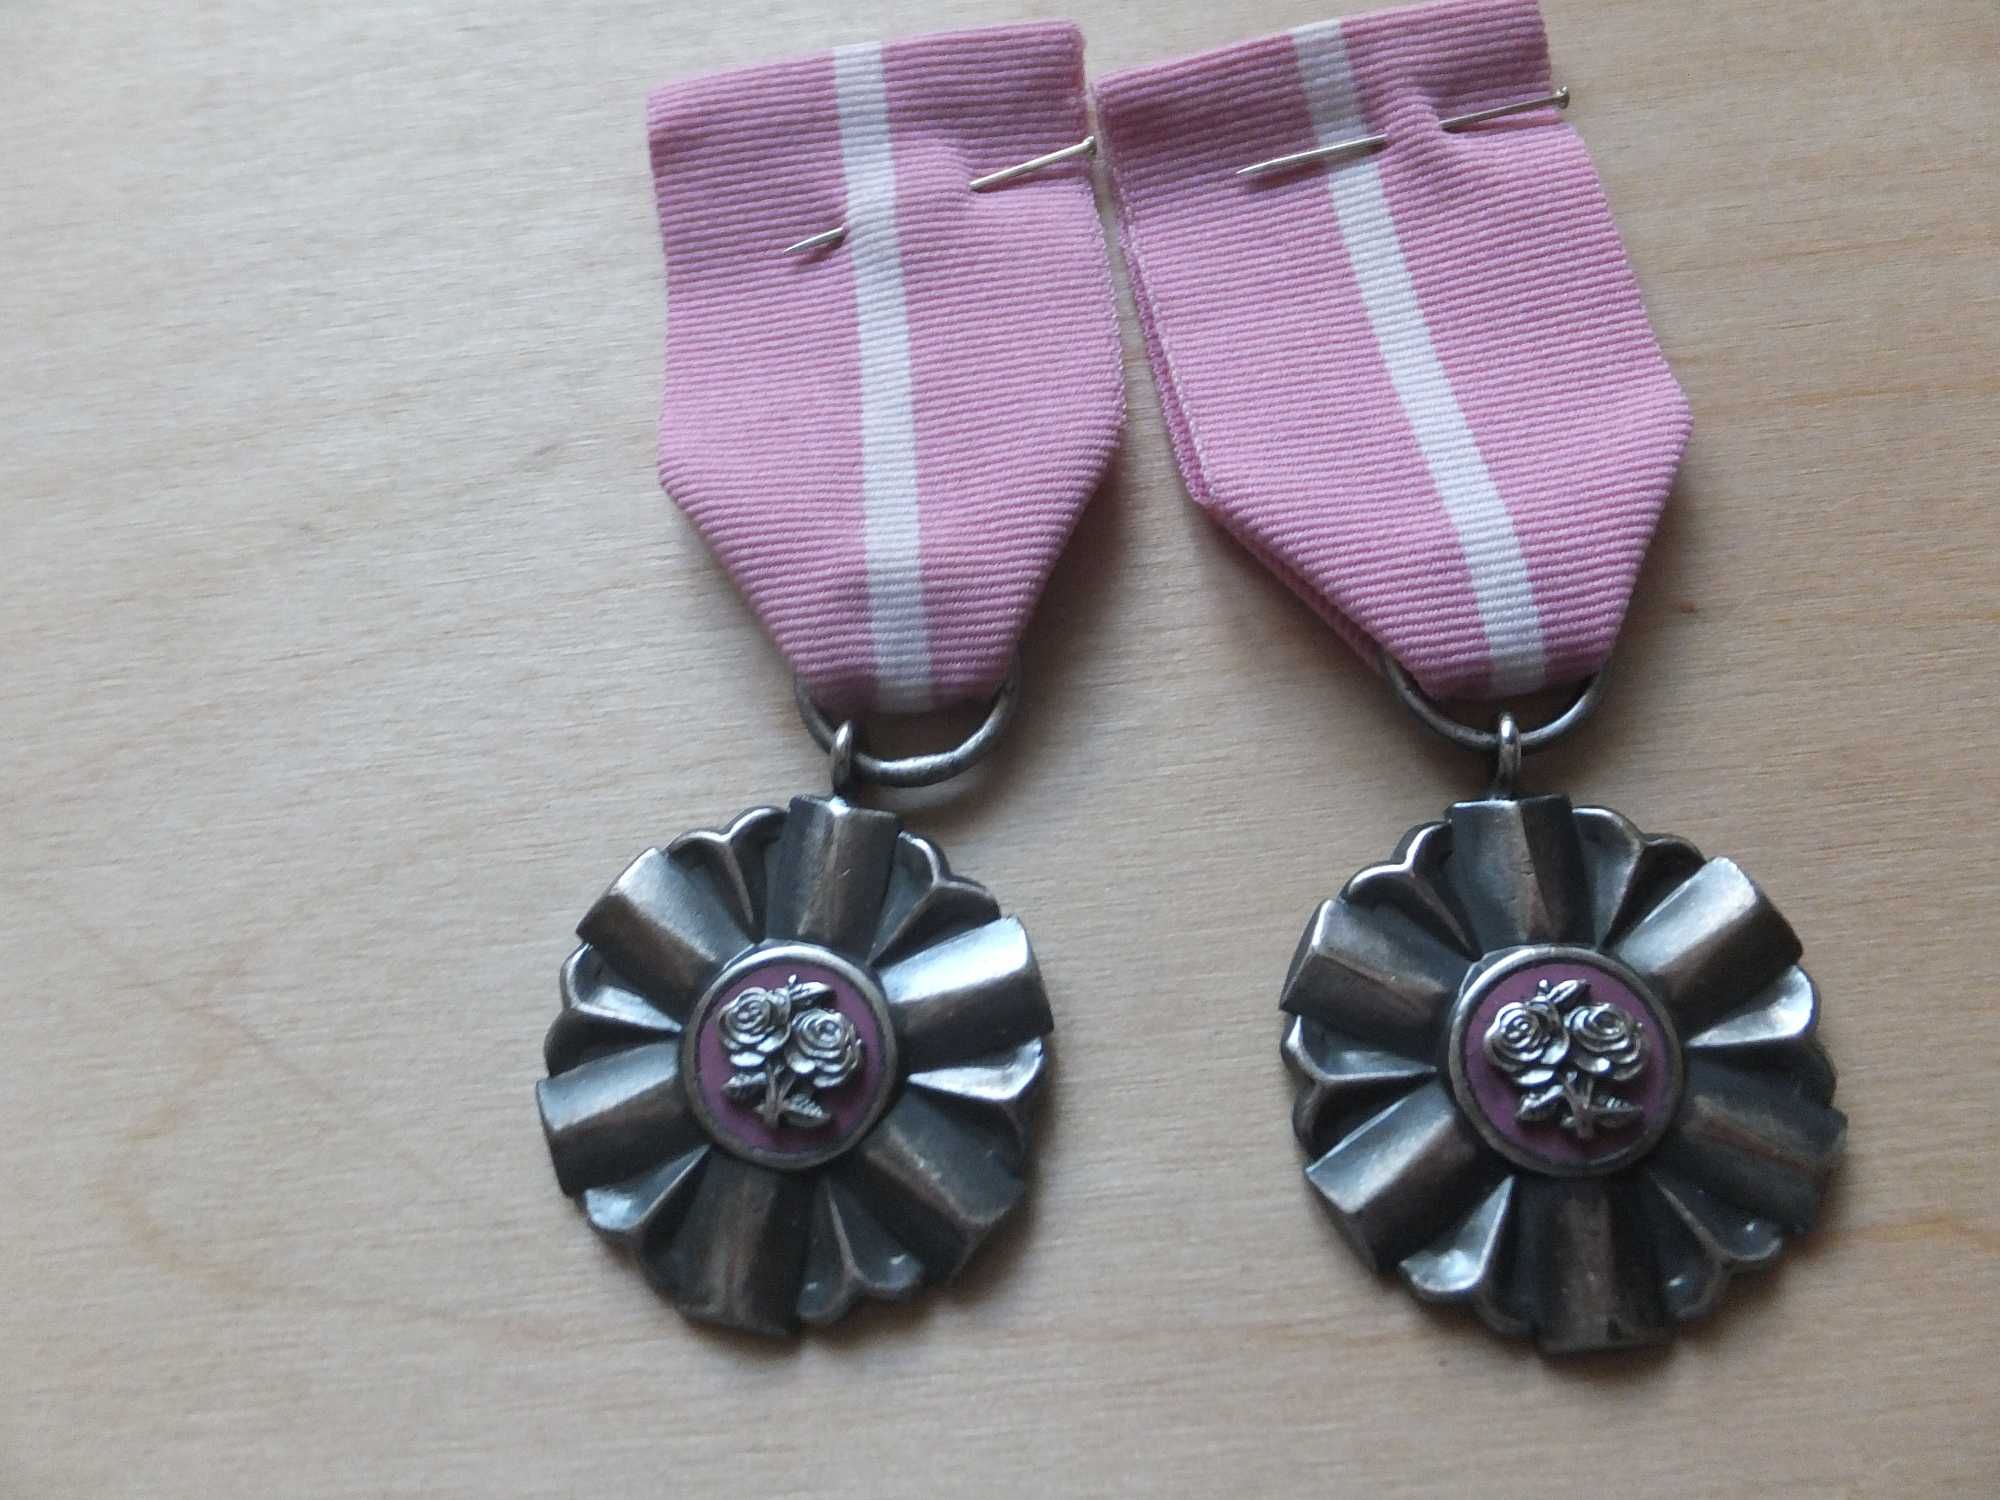 2x medale za długoletnie pożycie małżeńskie RP